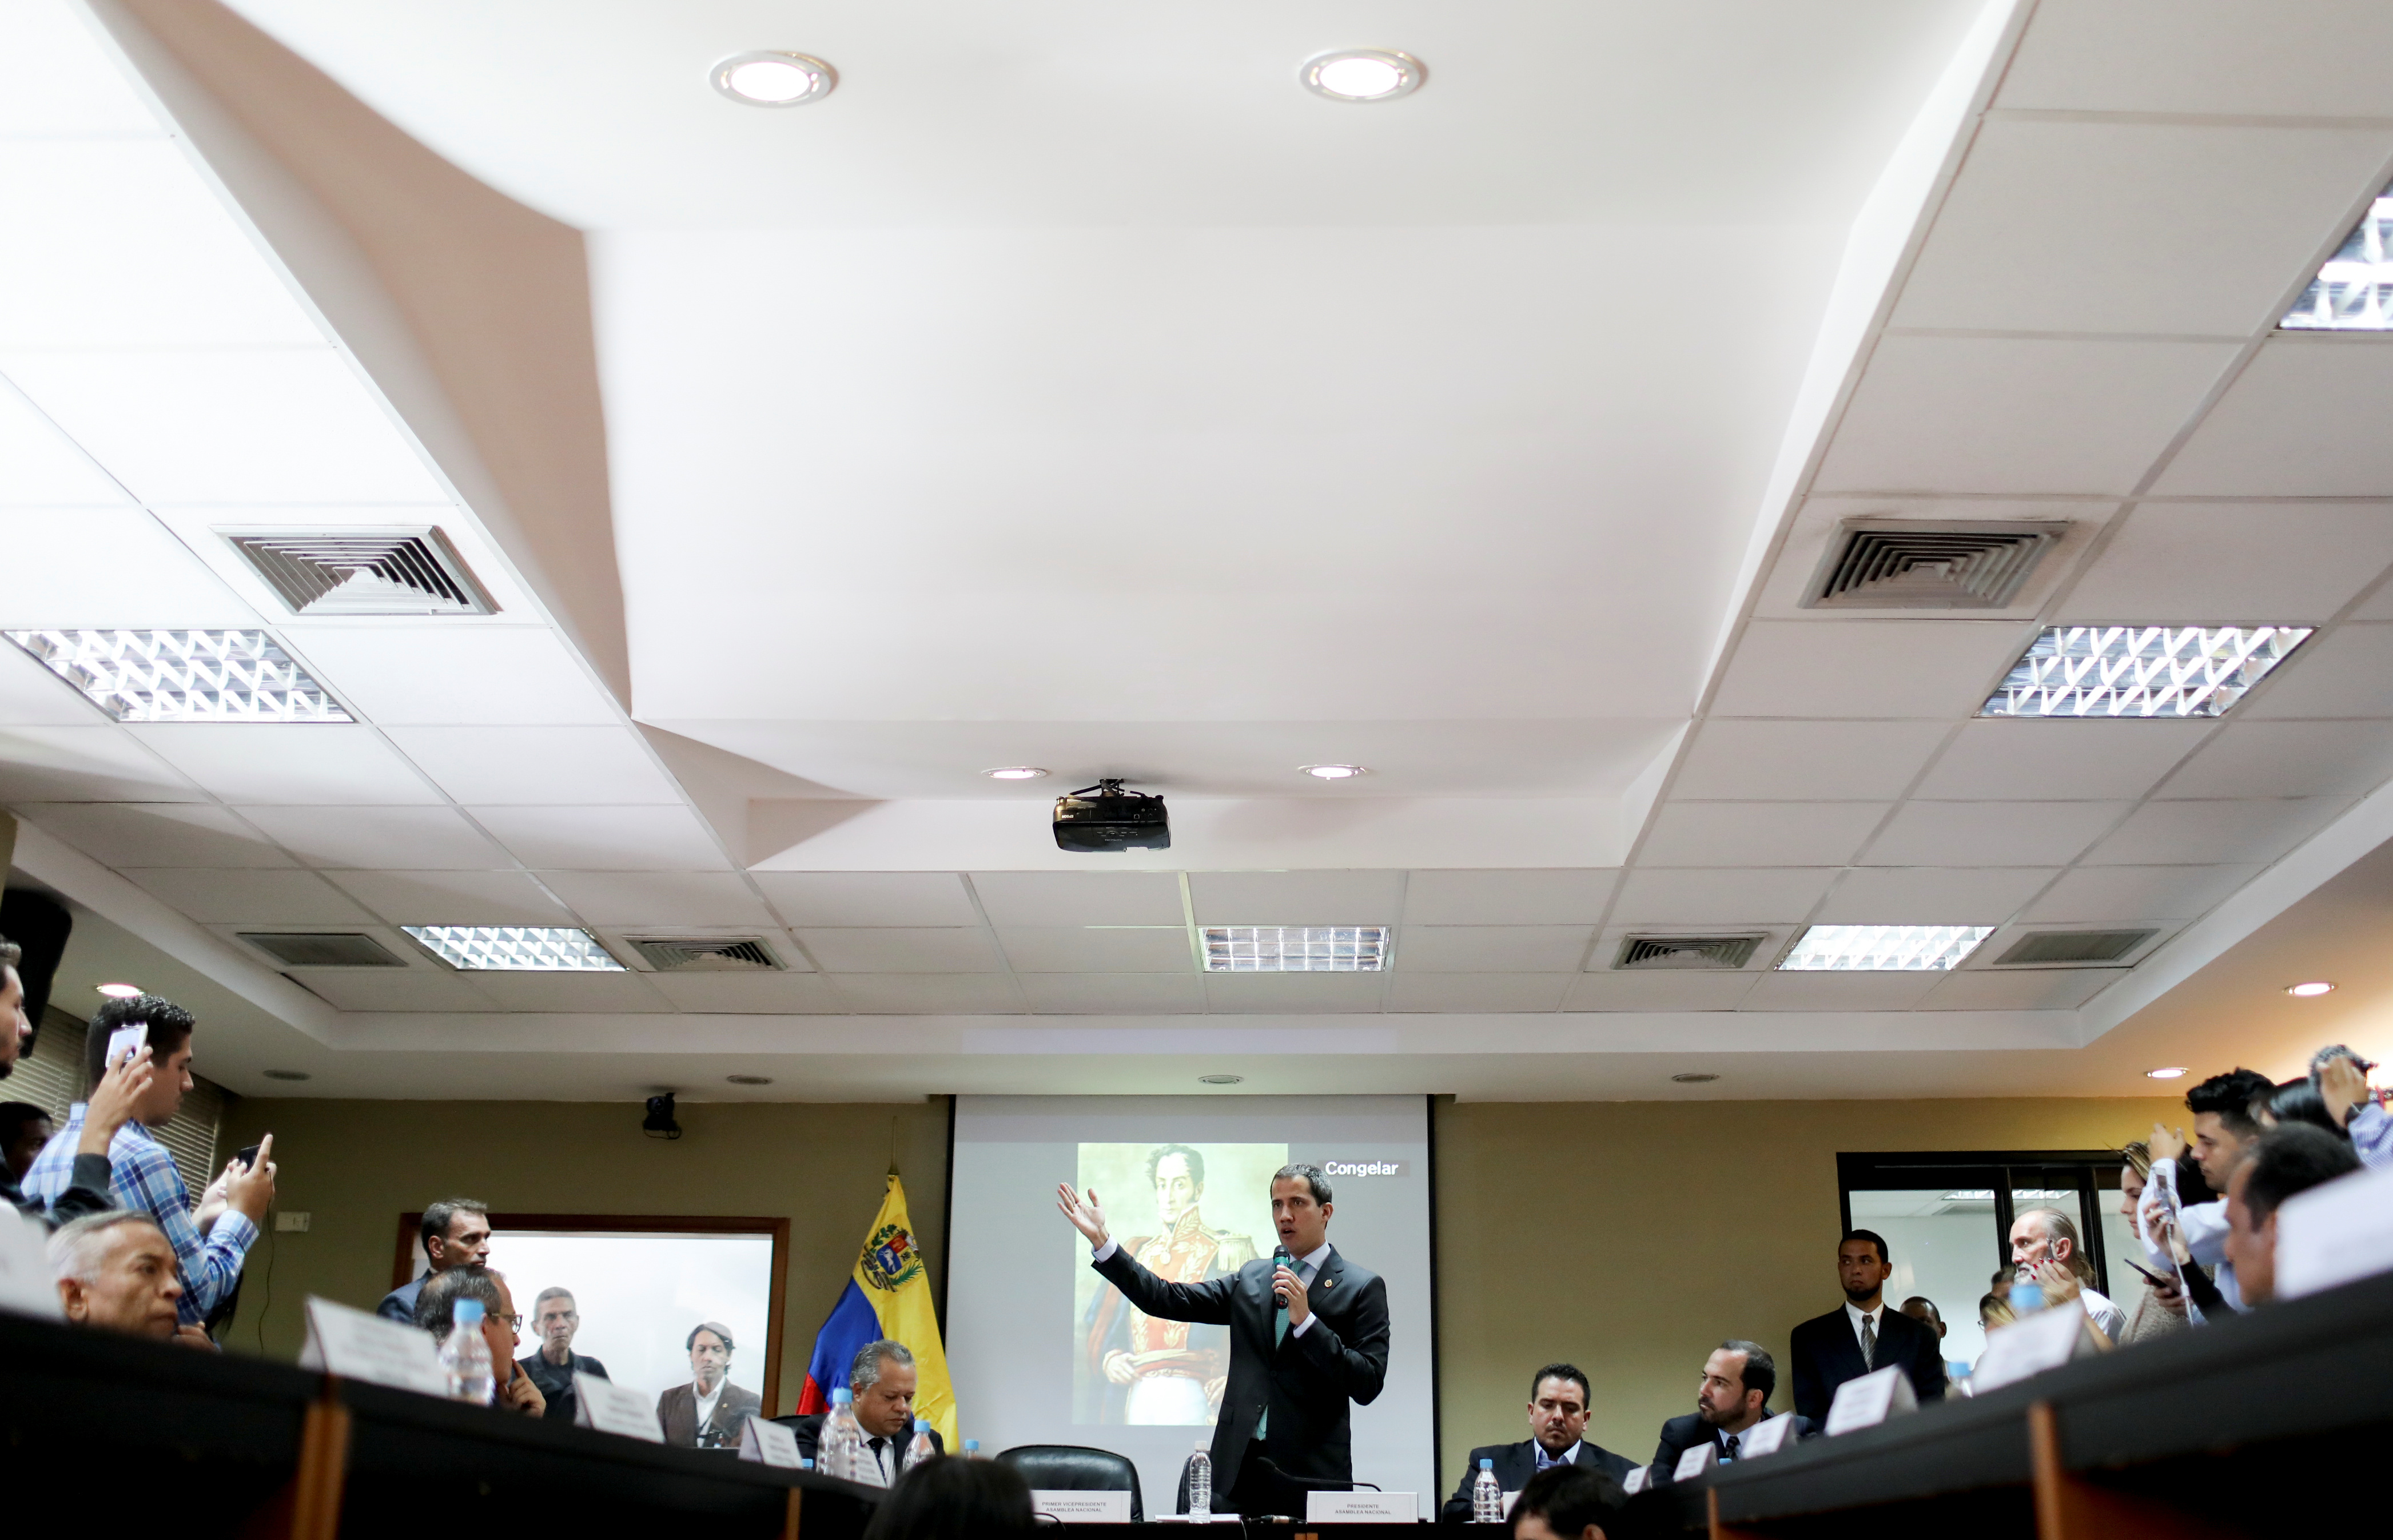 Comisión Delegada de la AN rechaza presencia de la narcoguerrilla en Venezuela (Documento)